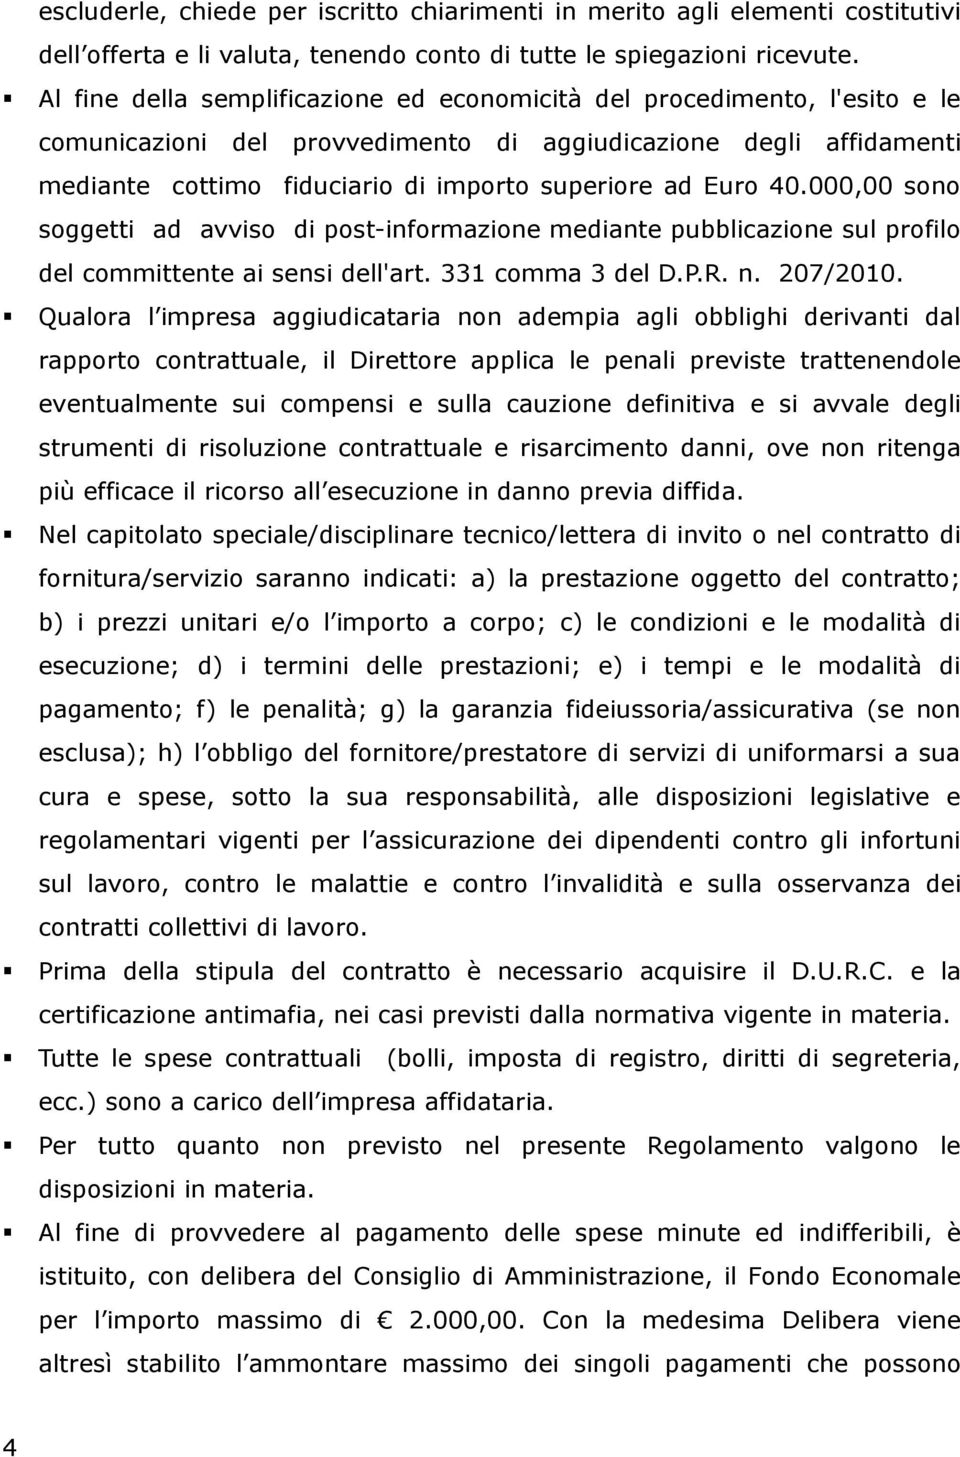 Euro 40.000,00 sono soggetti ad avviso di post-informazione mediante pubblicazione sul profilo del committente ai sensi dell'art. 331 comma 3 del D.P.R. n. 207/2010.